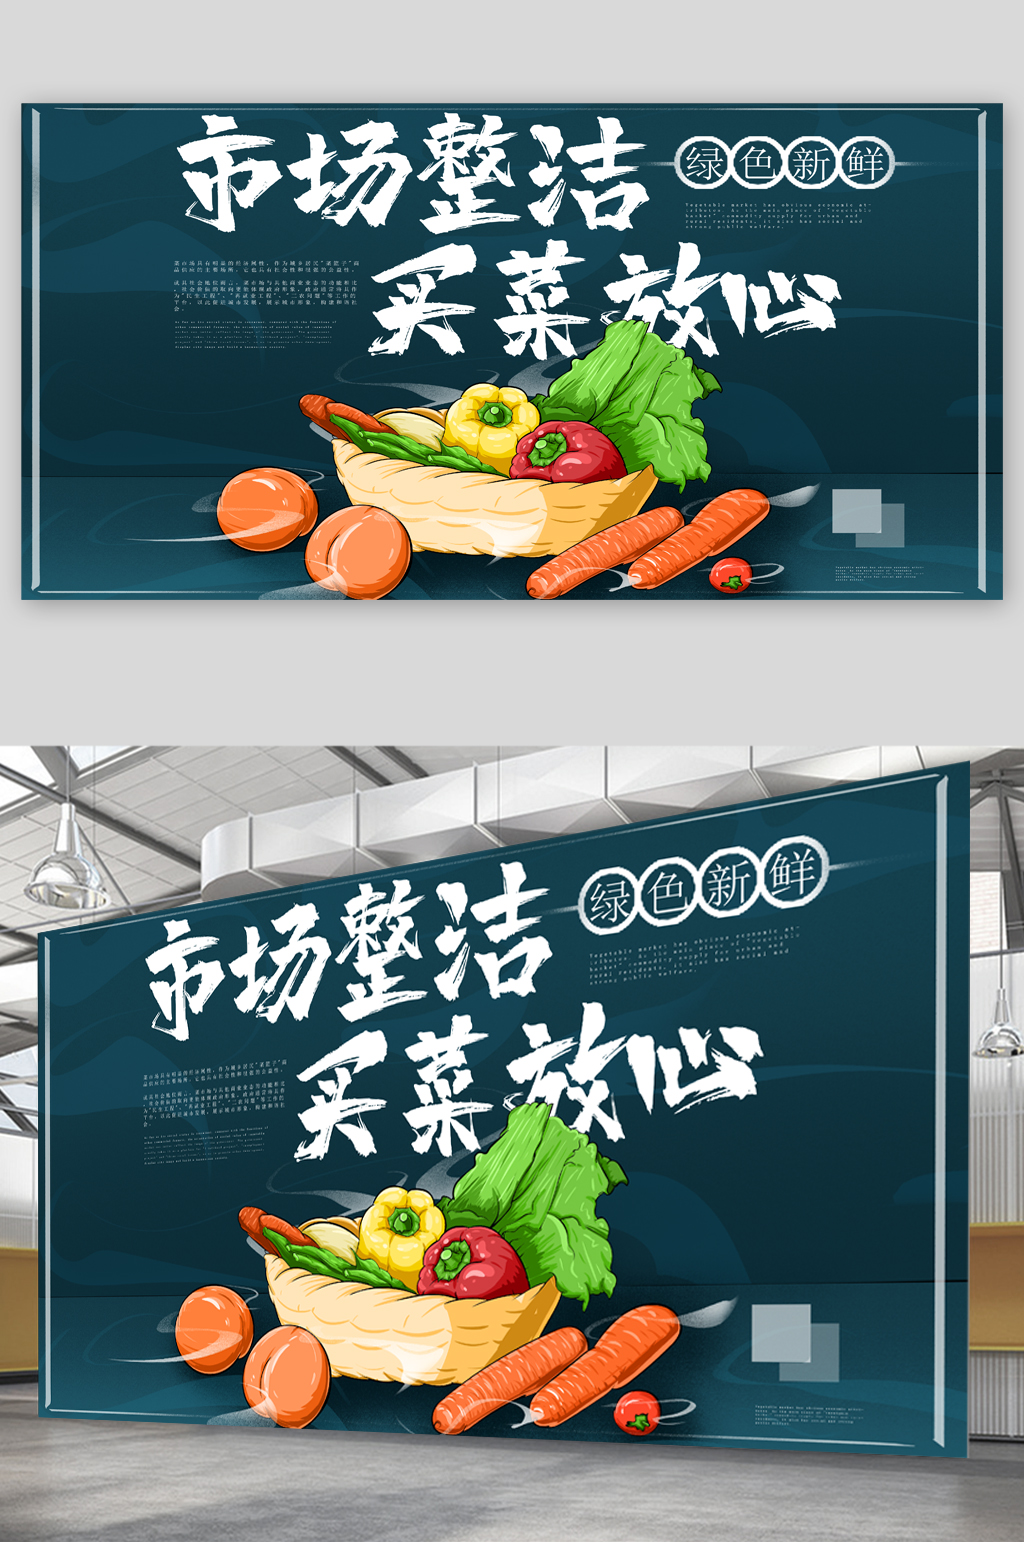 菜市场广告宣传单图片